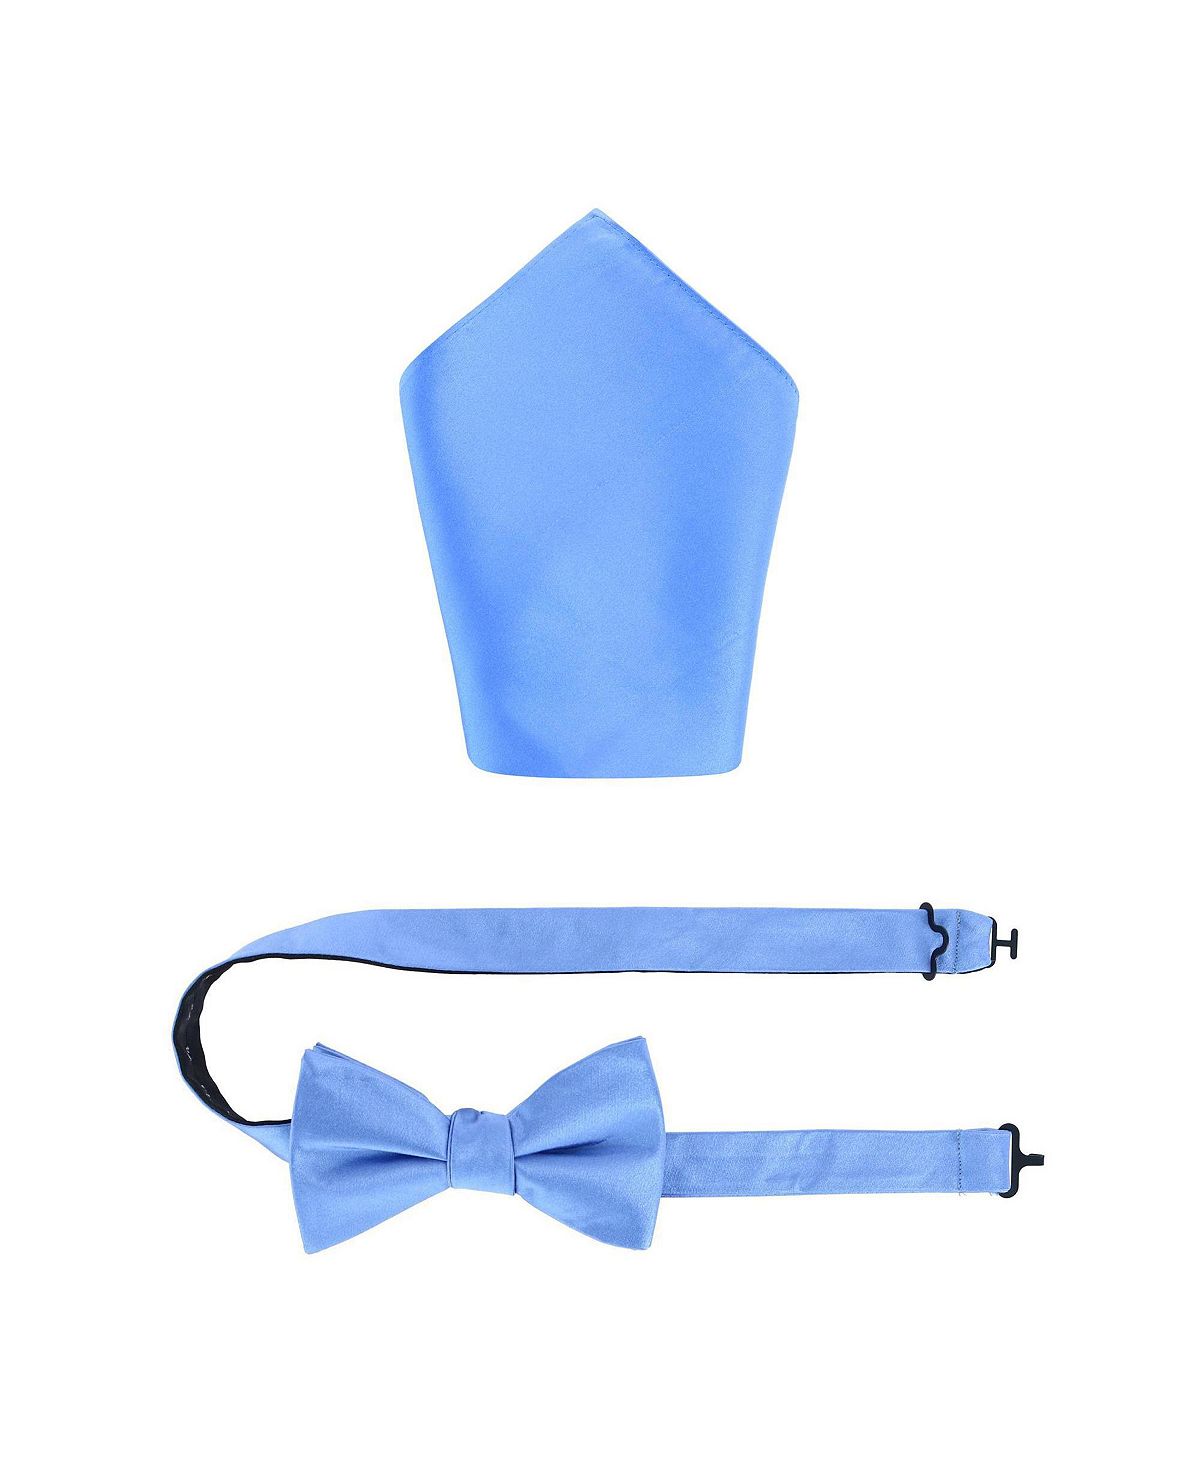 Комбинация однотонного шелкового галстука-бабочки и нагрудного платка Sutton TRAFALGAR